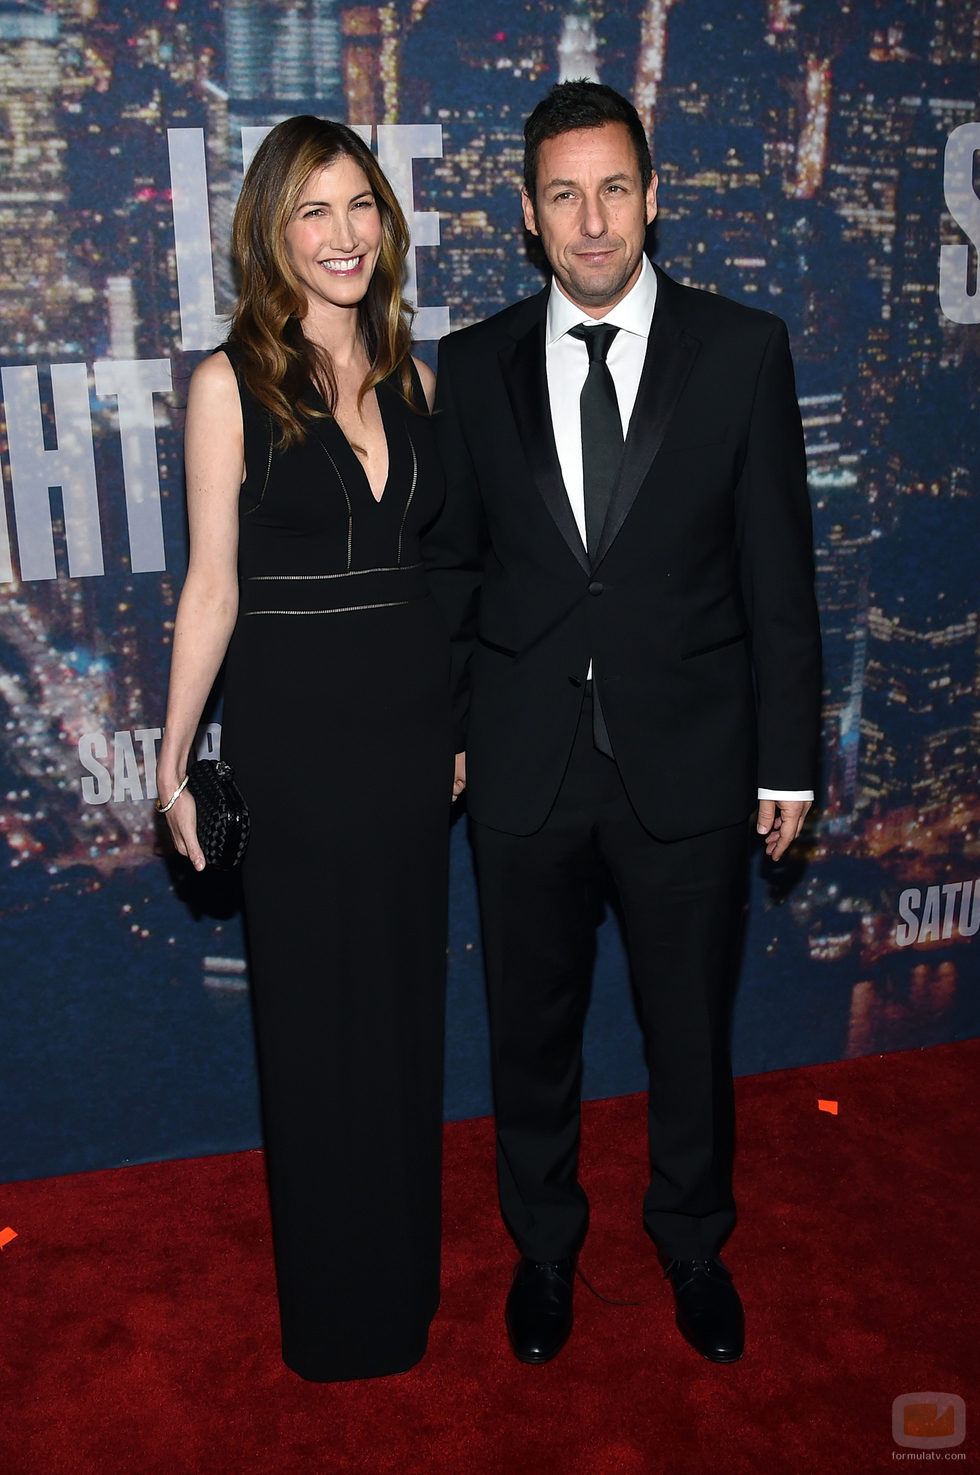 Adam Sandler y su esposa en el 40 aniversario de 'Saturday Night Live'